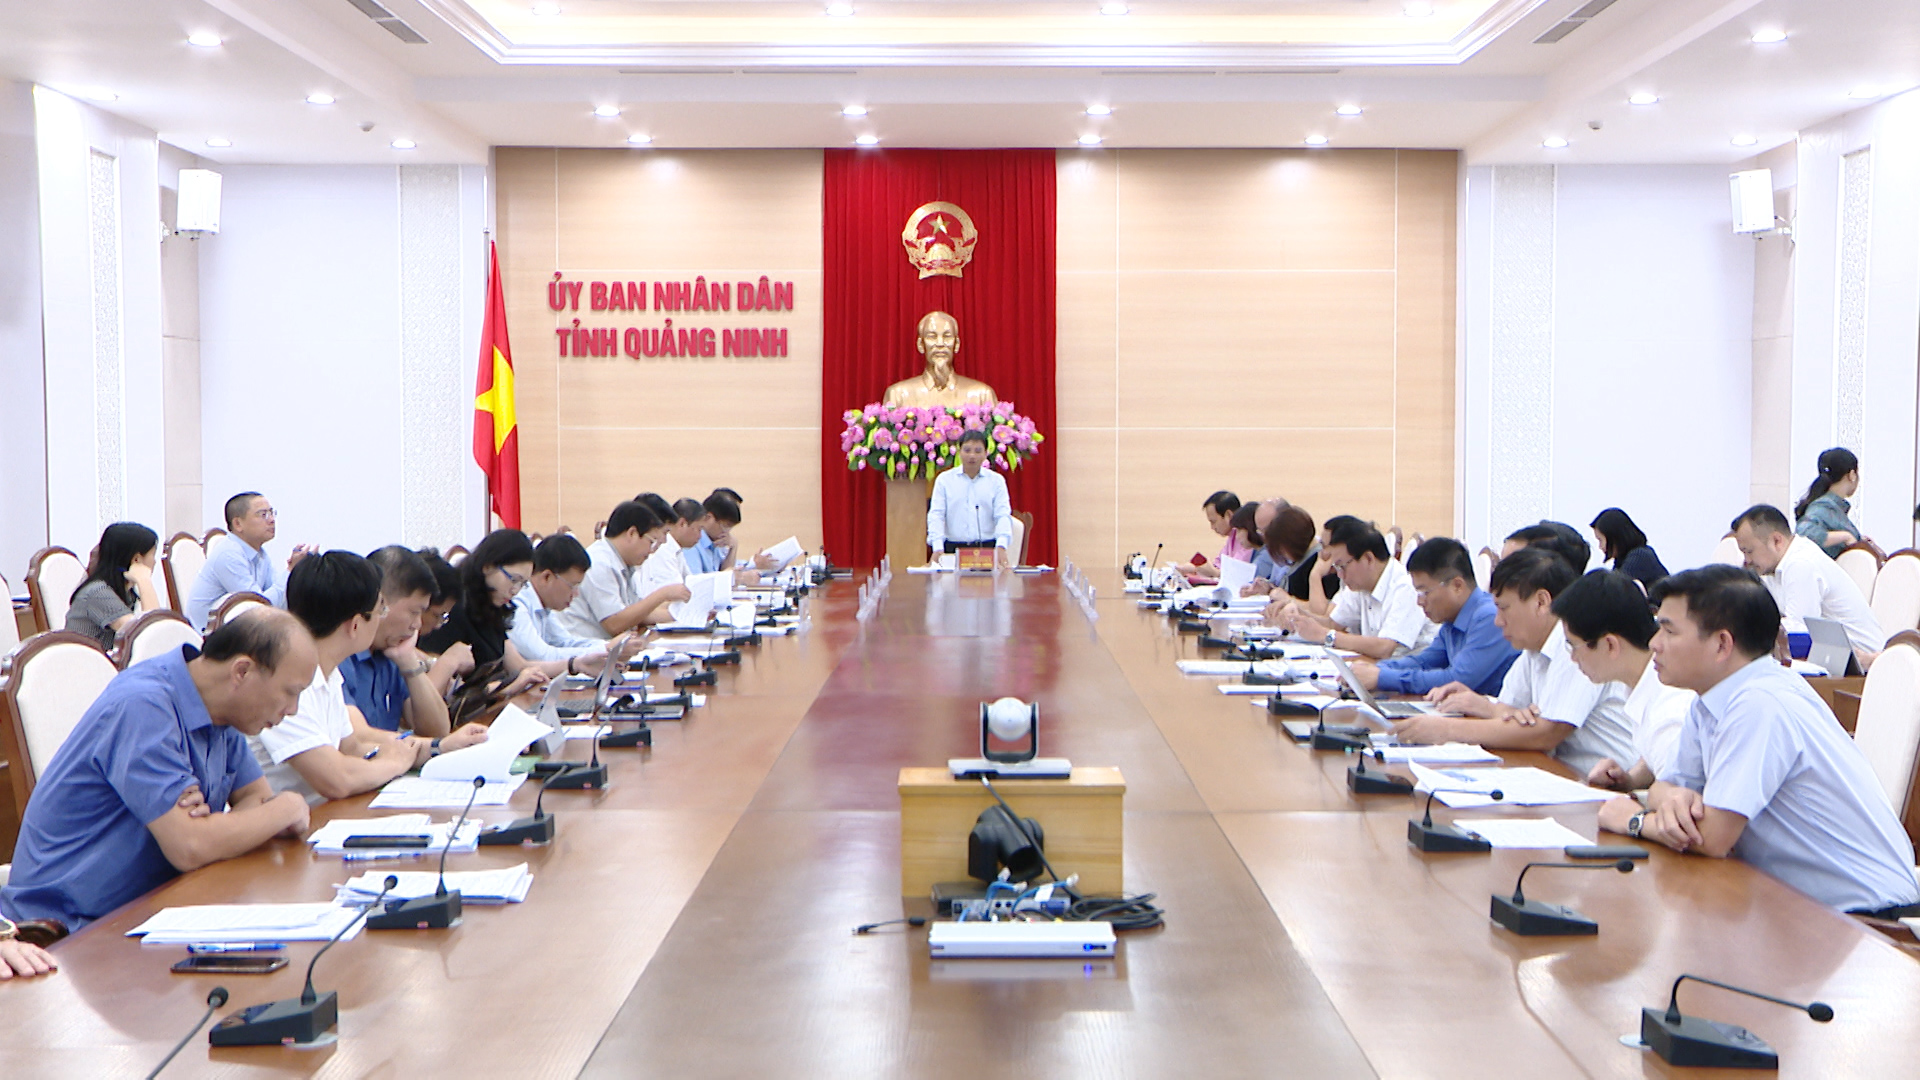 Đồng chí Nguyễn Văn Thắng, Bí thư Ban Cán sự Đảng, Chủ tịch UBND phát biểu kết luận